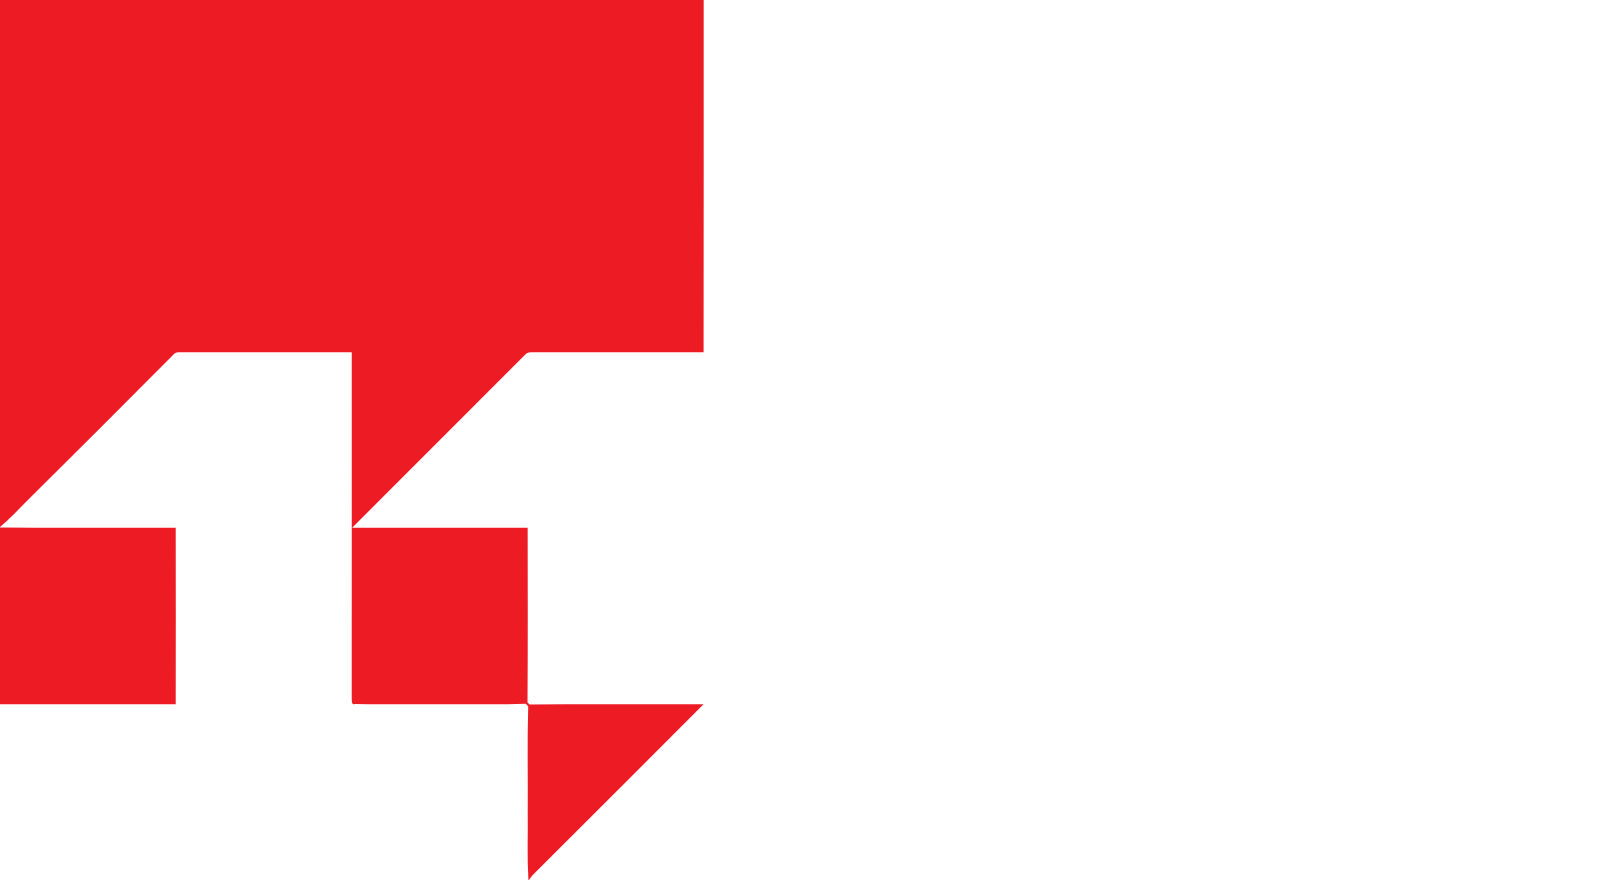 11 bit studios logo large for dark backgrounds (transparent PNG)